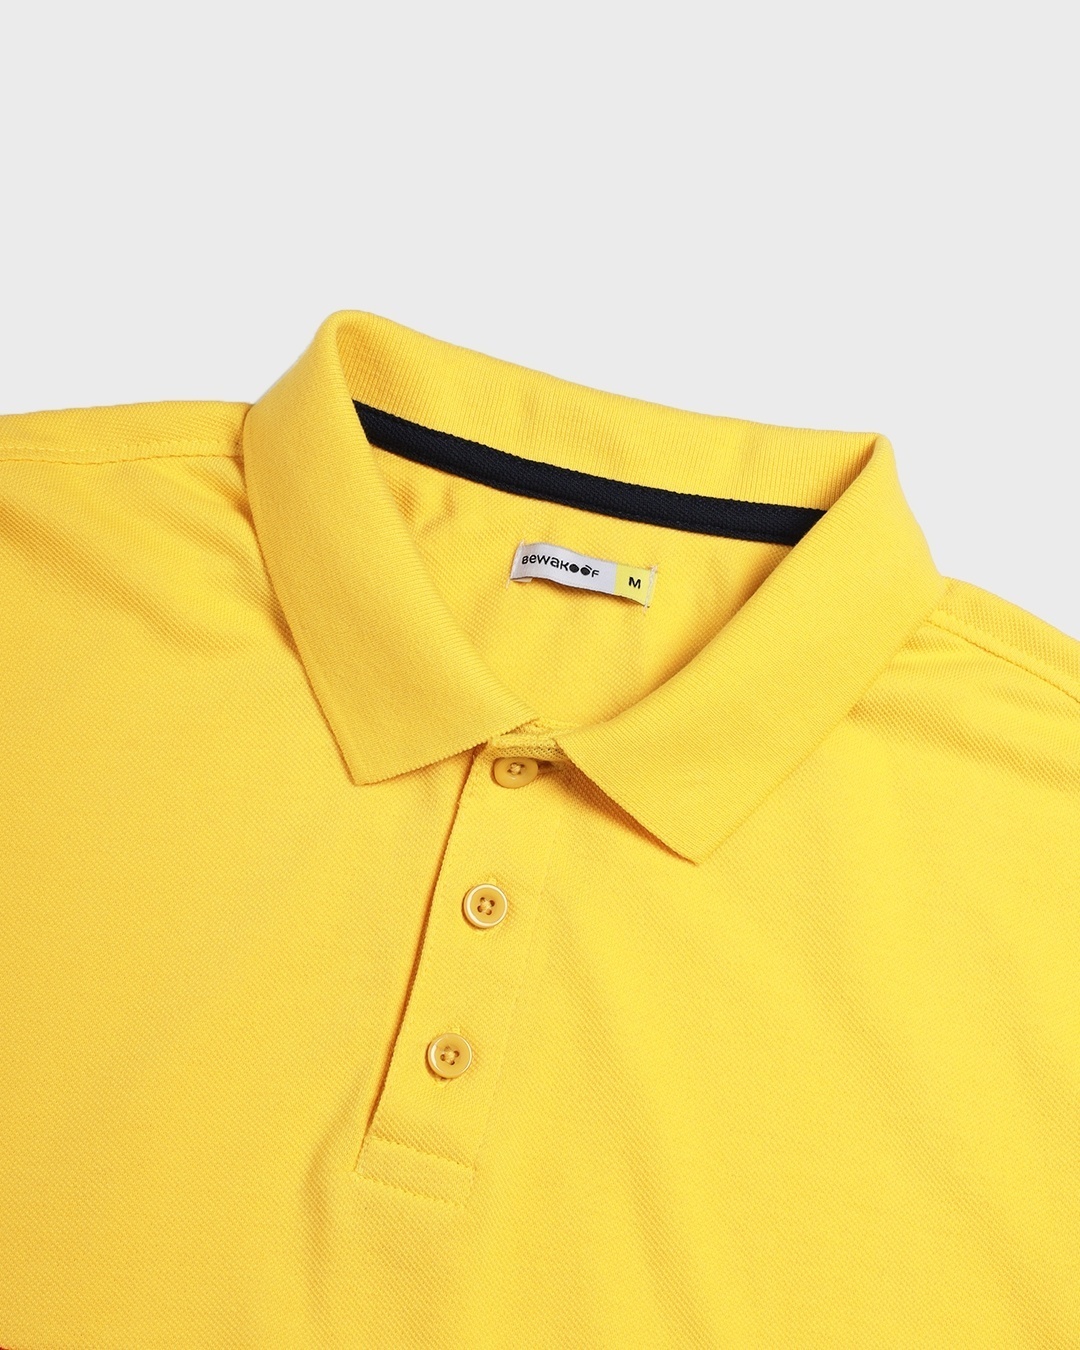 Shop Men's Lemon Crome & Crimson Red Color Block Plus Size Polo T-shirt